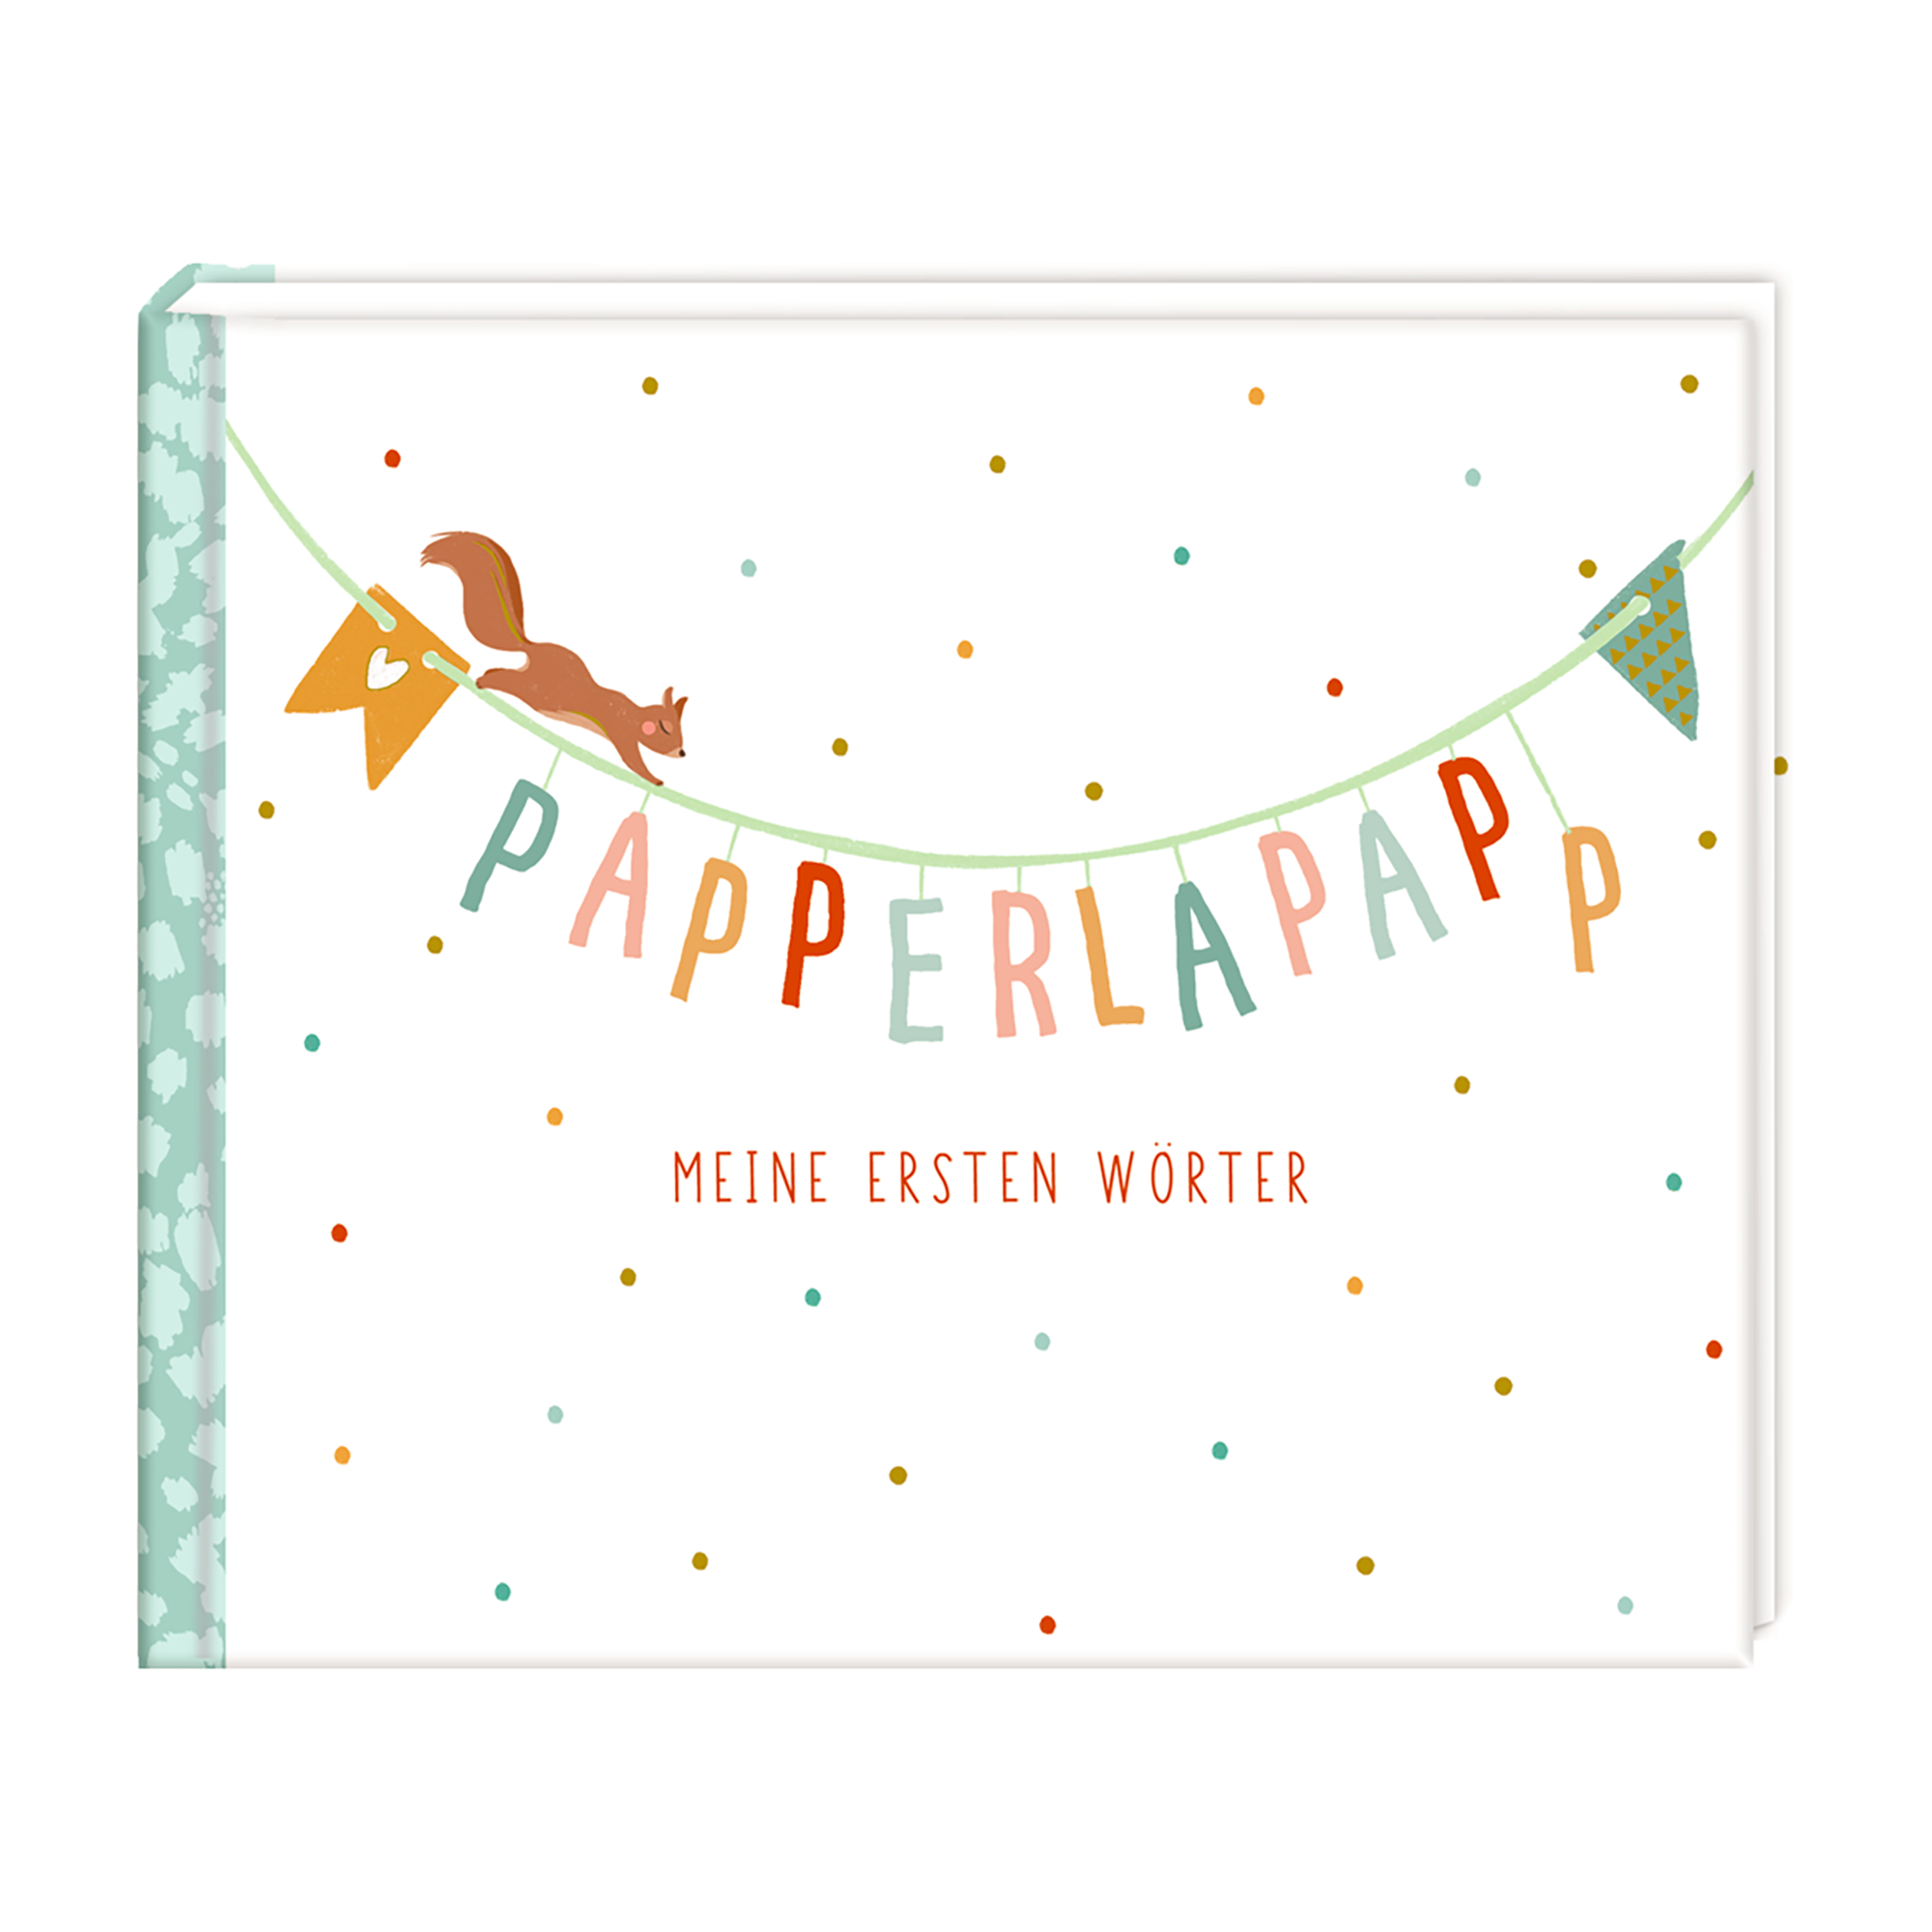 Papperlapapp - Meine ersten Wörter (Little Wonder) COPPENRATH Mehrfarbig 2000586583407 1